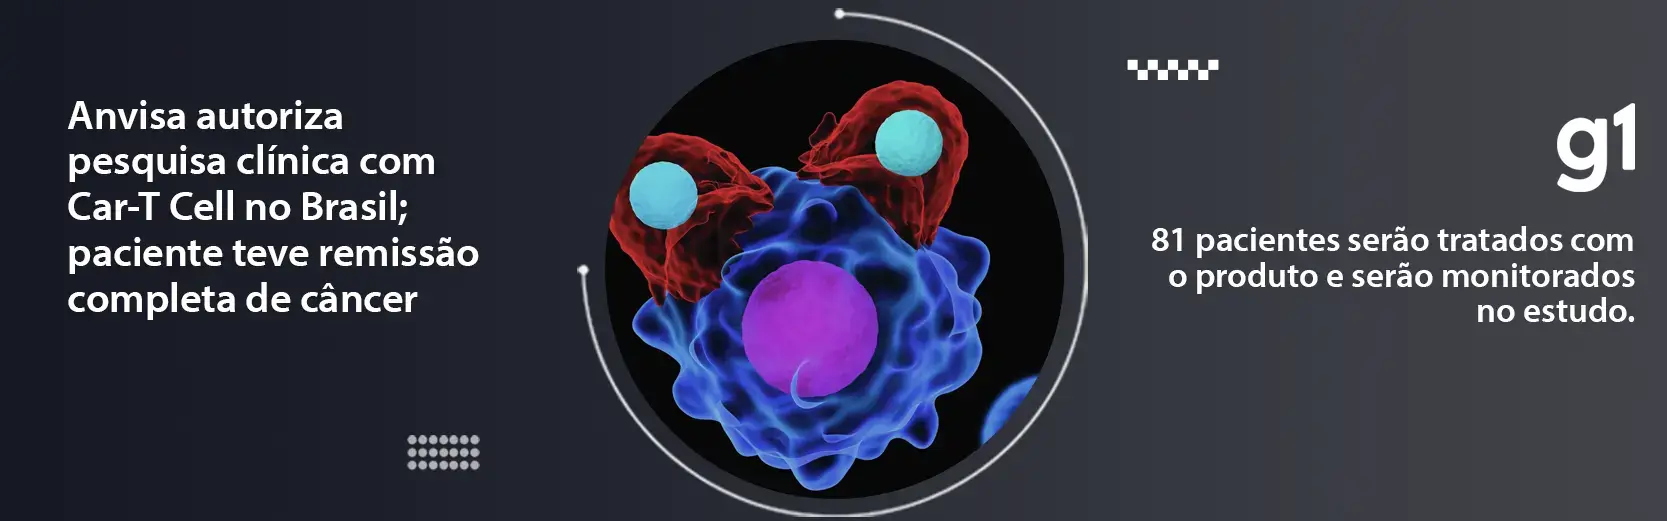 Autorizada pesquisa clínica com tratamento Car-T Cell